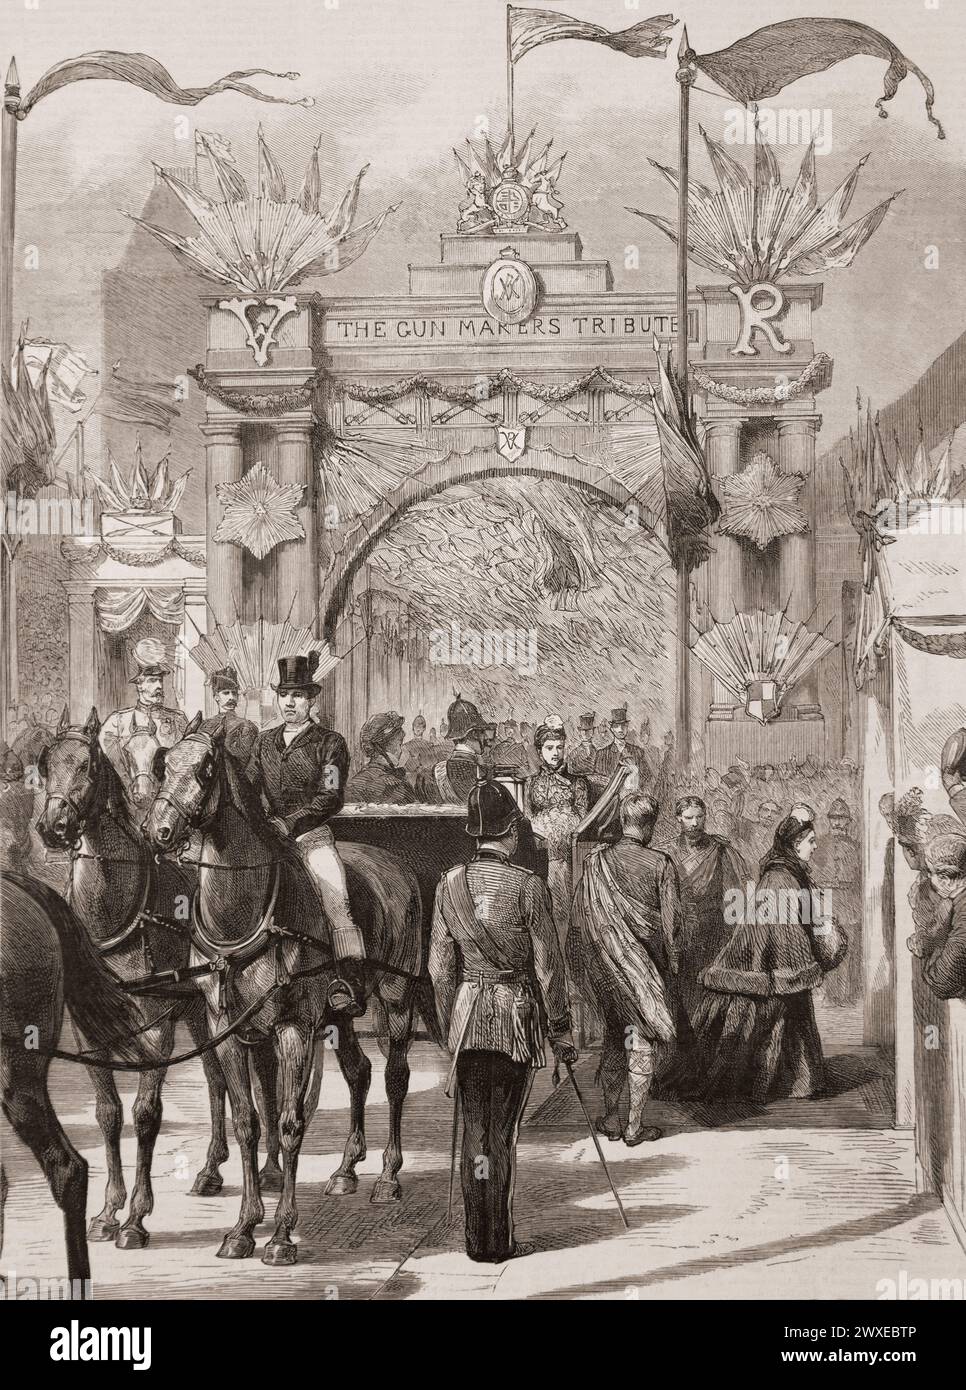 Arrivo della regina Vittoria al padiglione per porre la prima pietra delle nuove Victoria Courts - l'Arco dei Gunmakers, Birmingham, Inghilterra. Dal giornale Graphic Illustrated Weekly, stampato nel 1887. Foto Stock